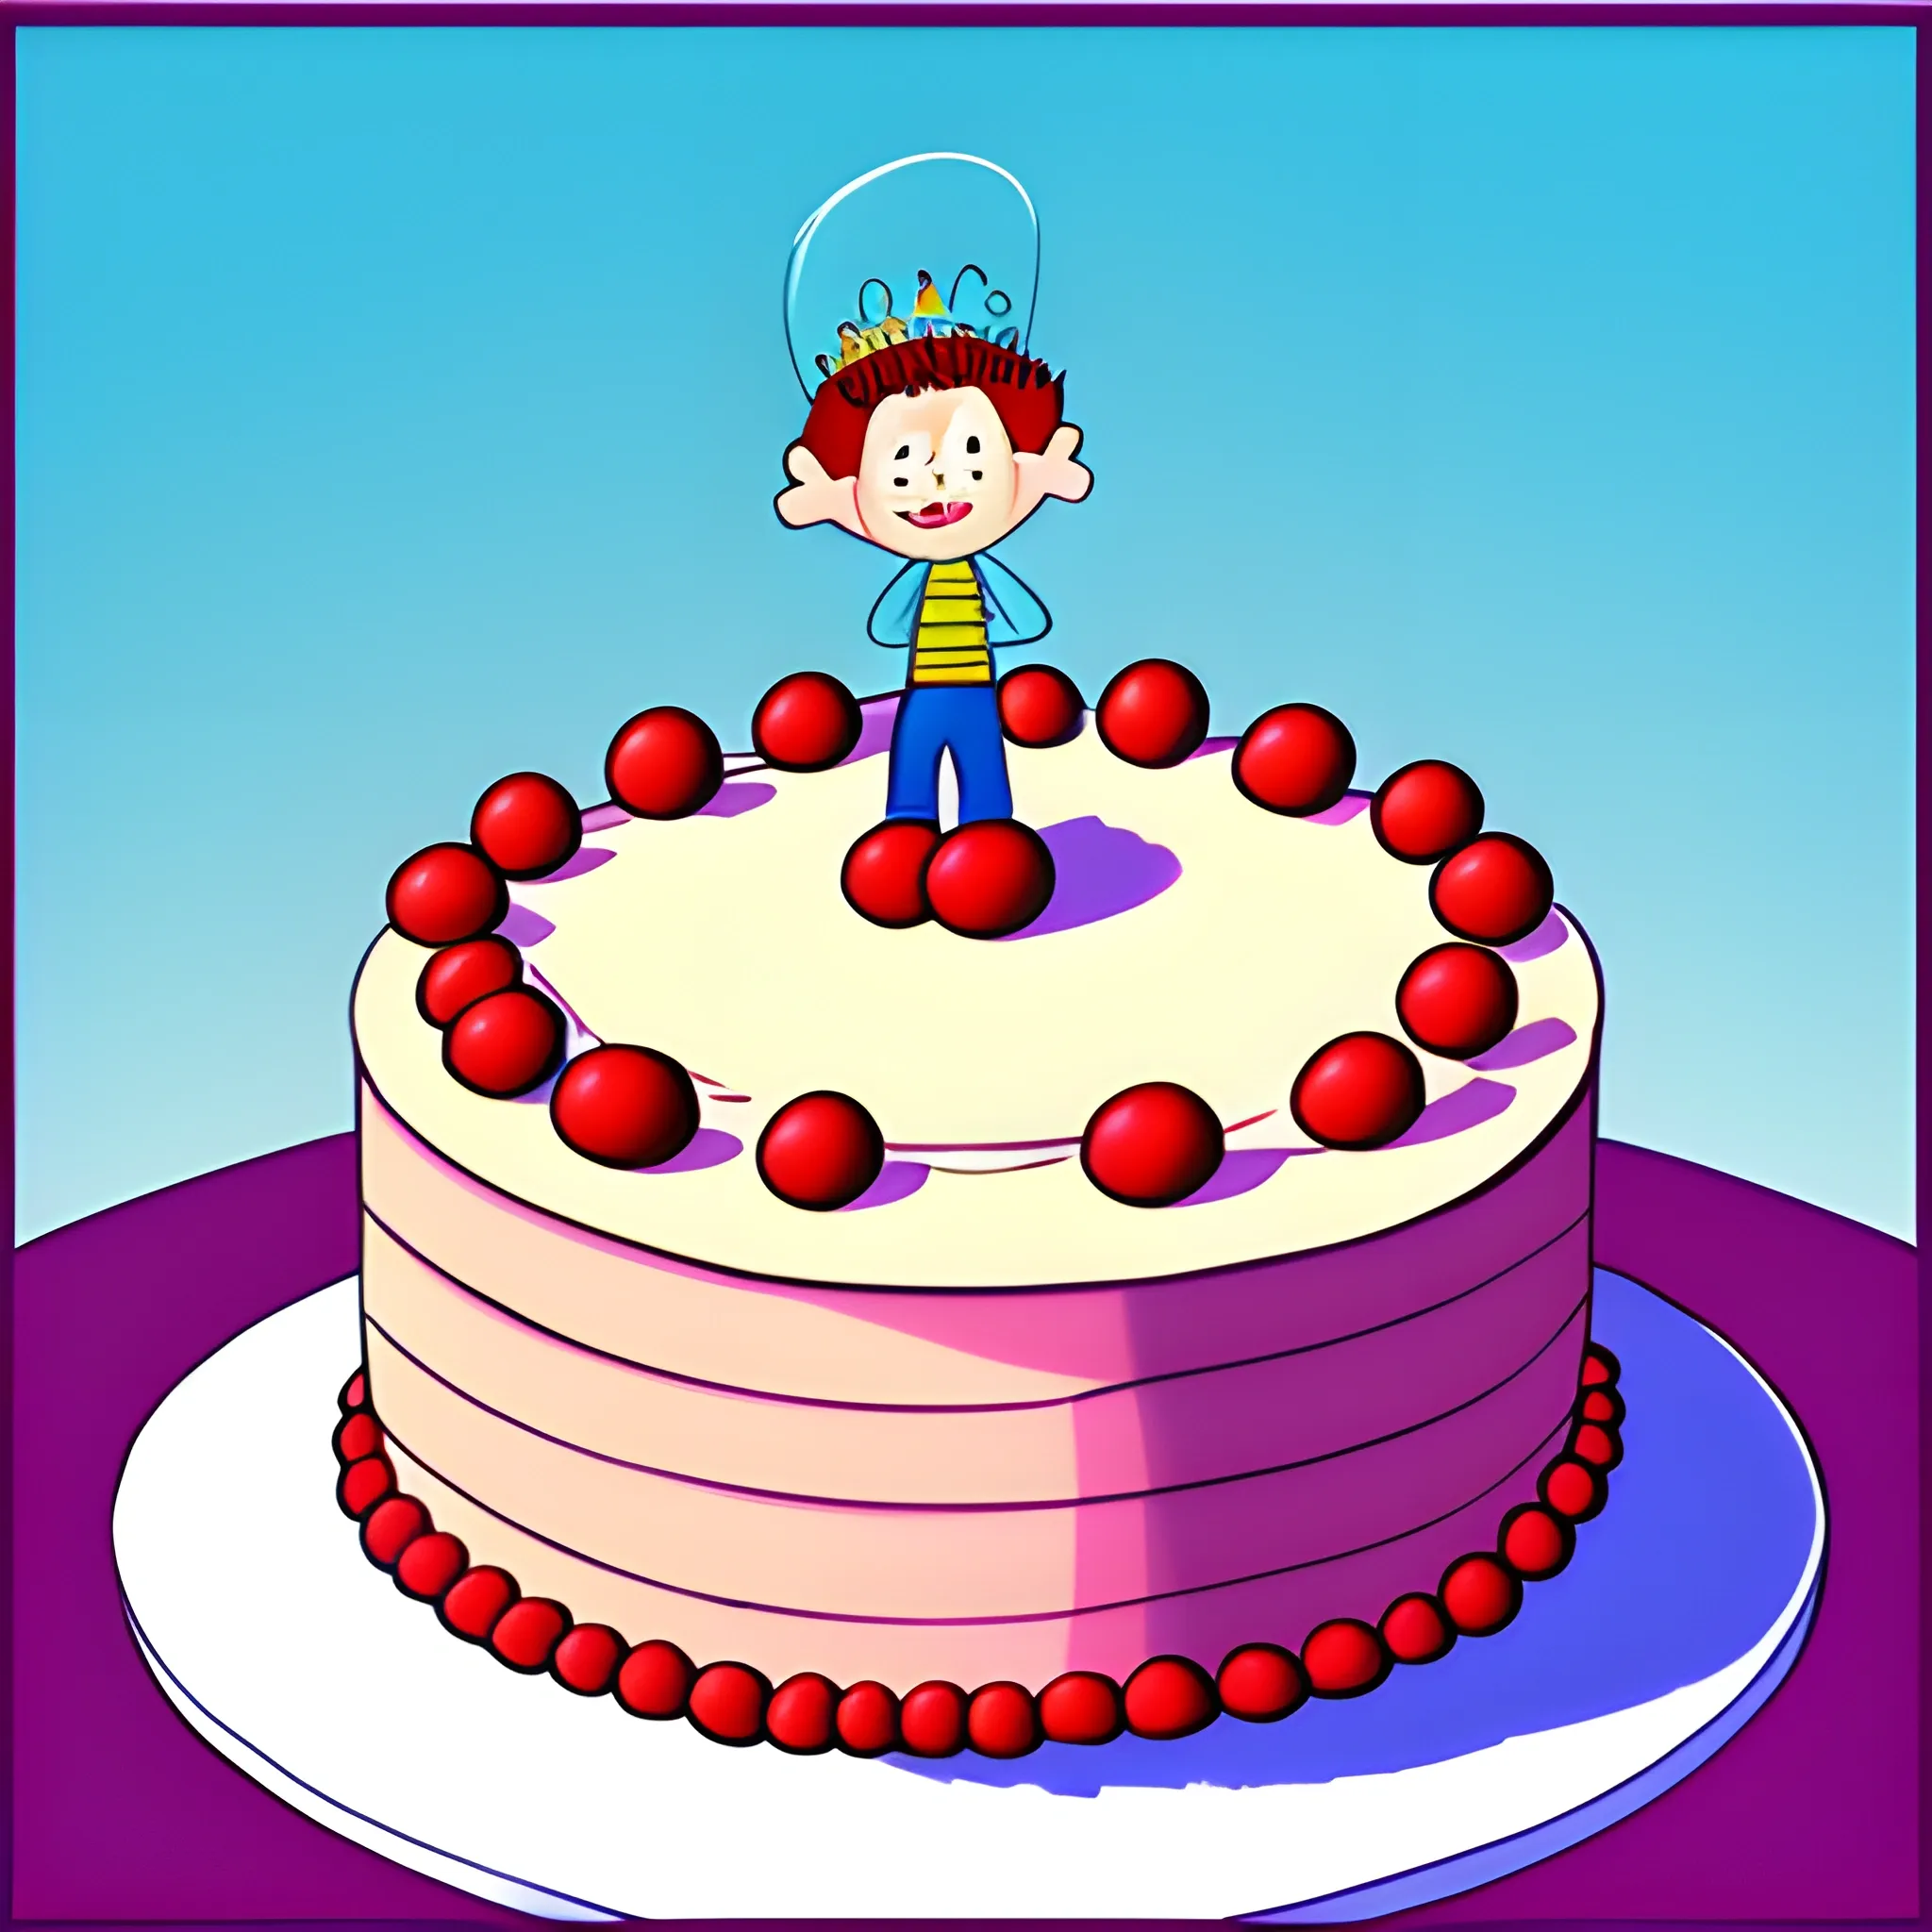 Big birthday cake Royalty Free Vector Image - VectorStock